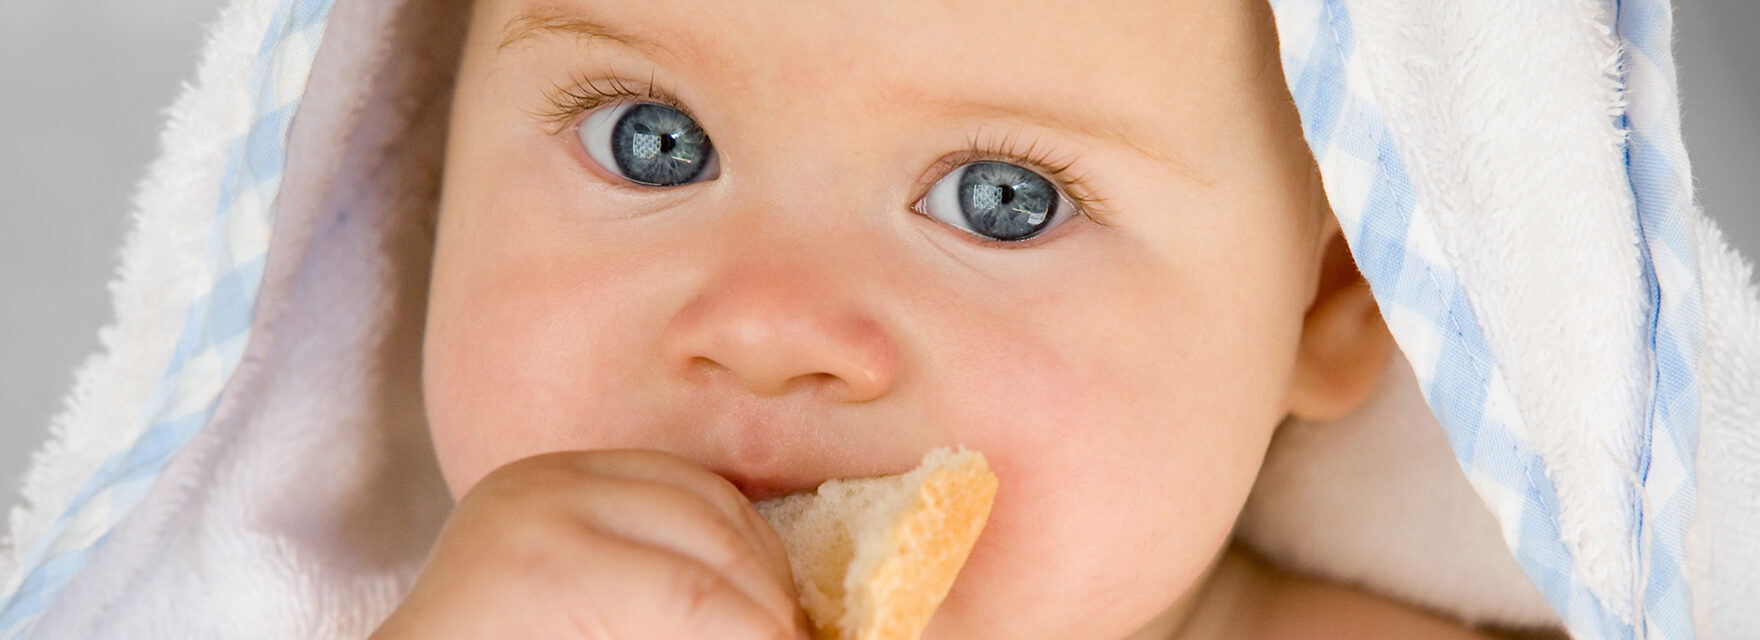 Как давать хлеб 9 месячному ребенку